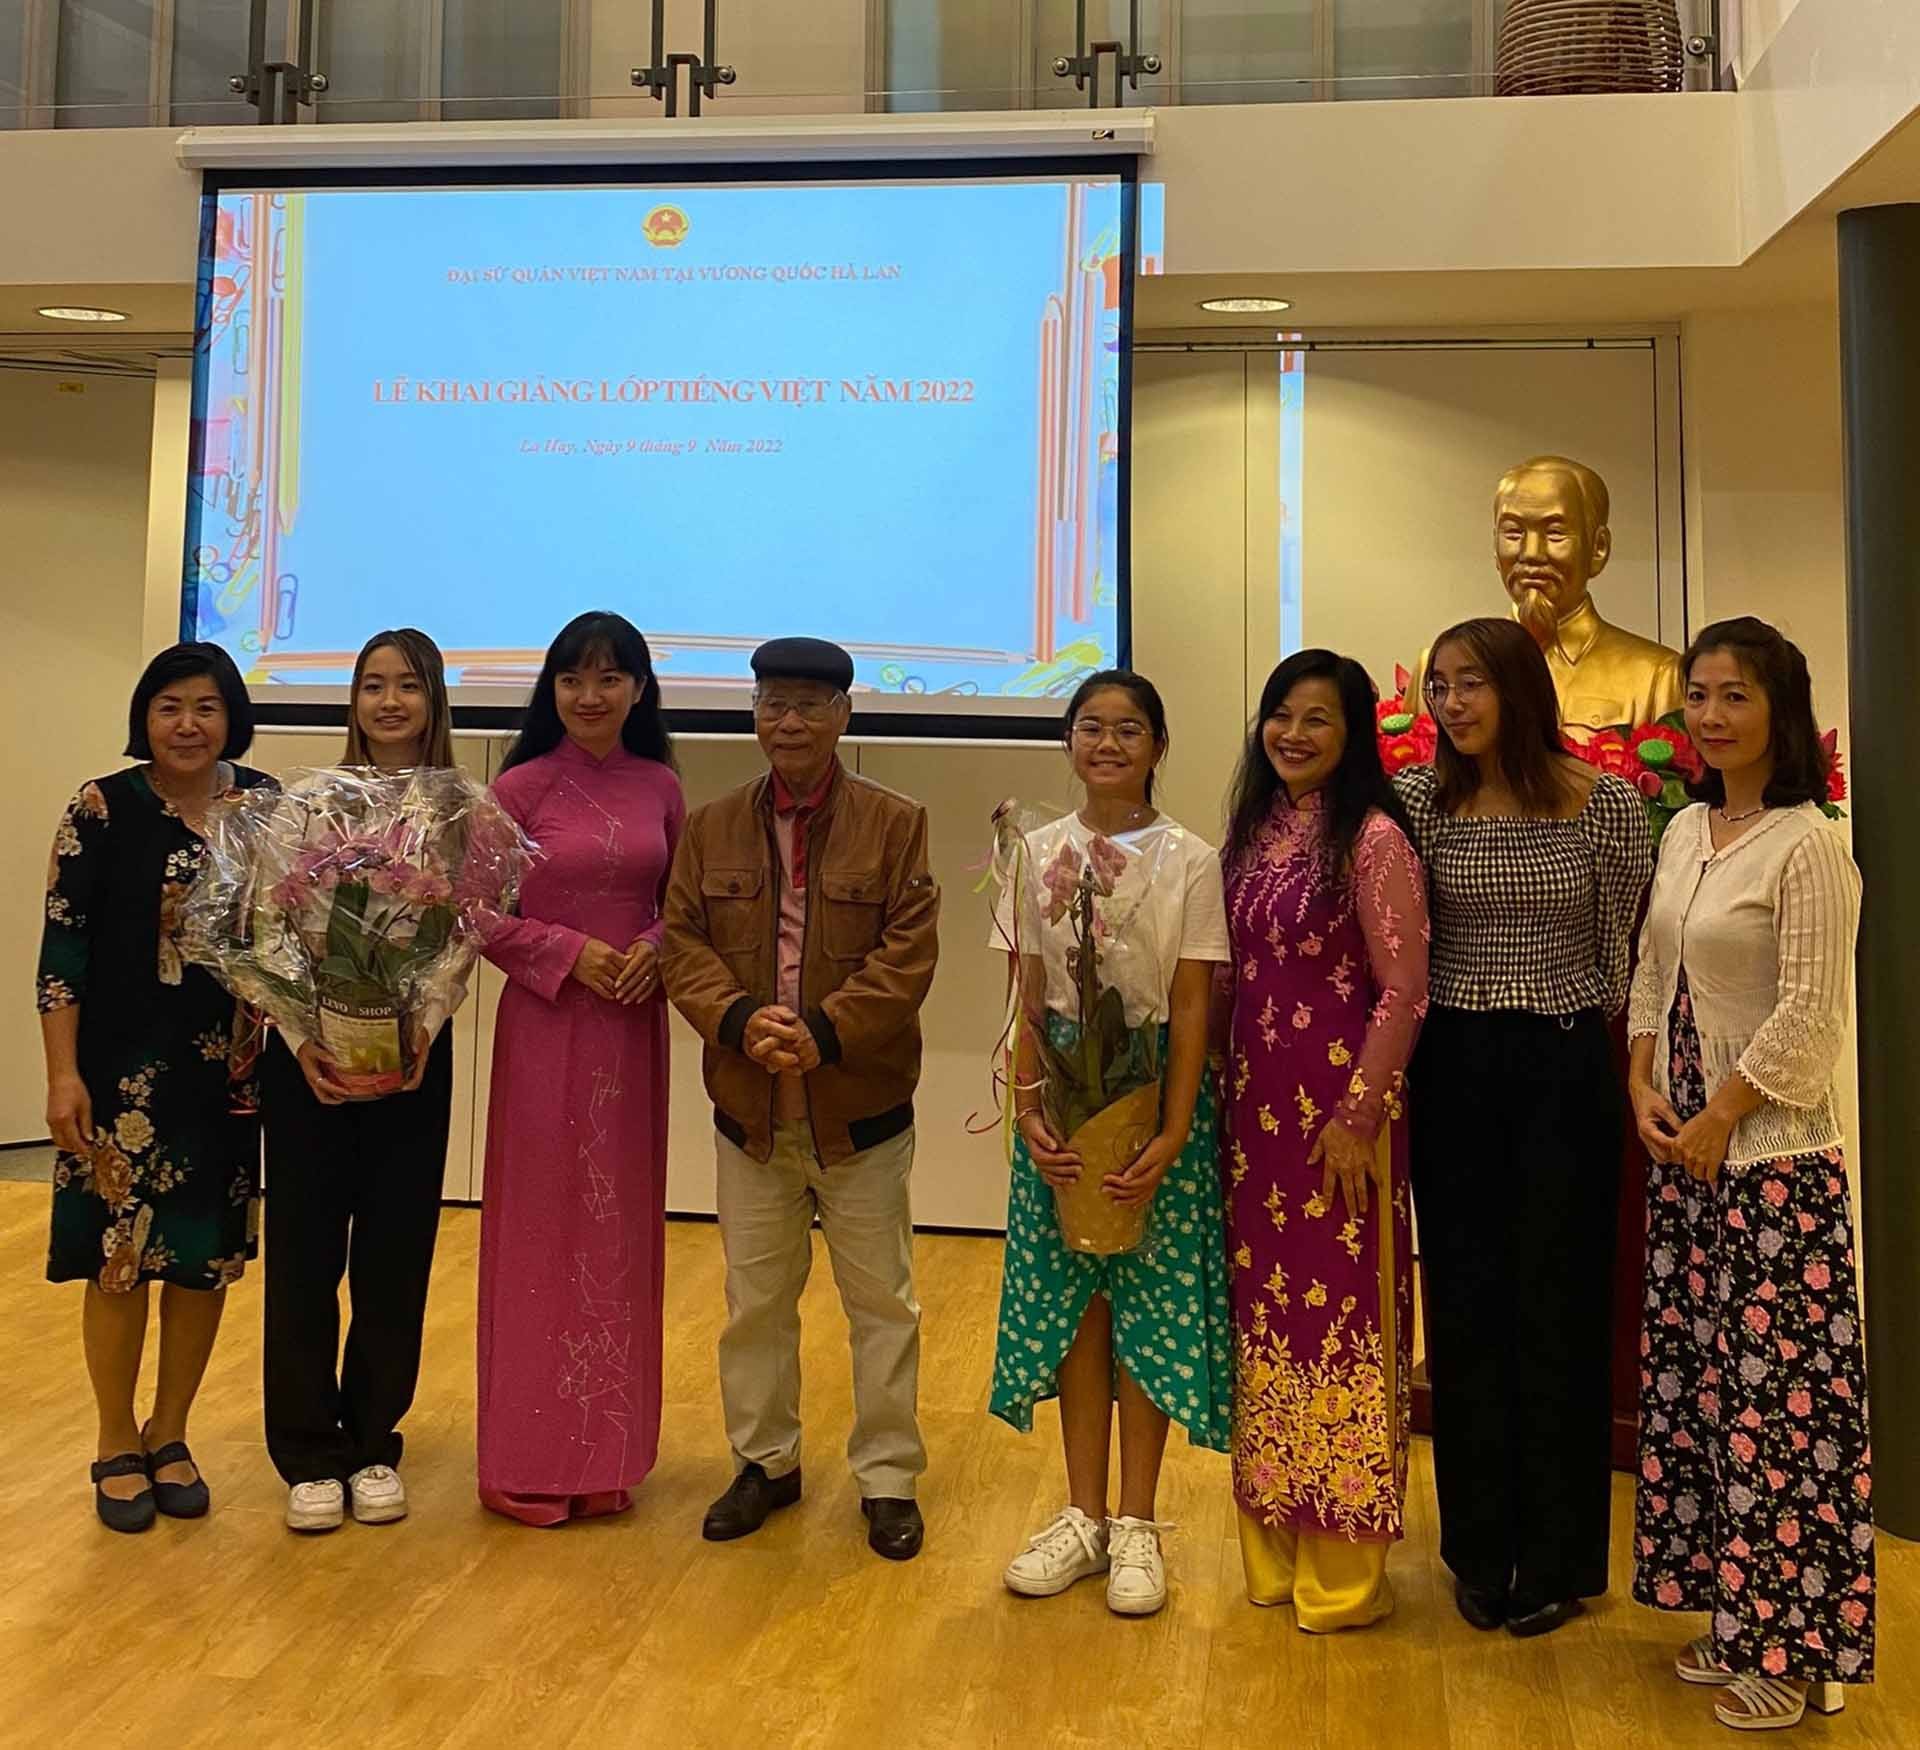 Khai giảng lớp tiếng Việt dành cho con em kiều bào tại Hà Lan